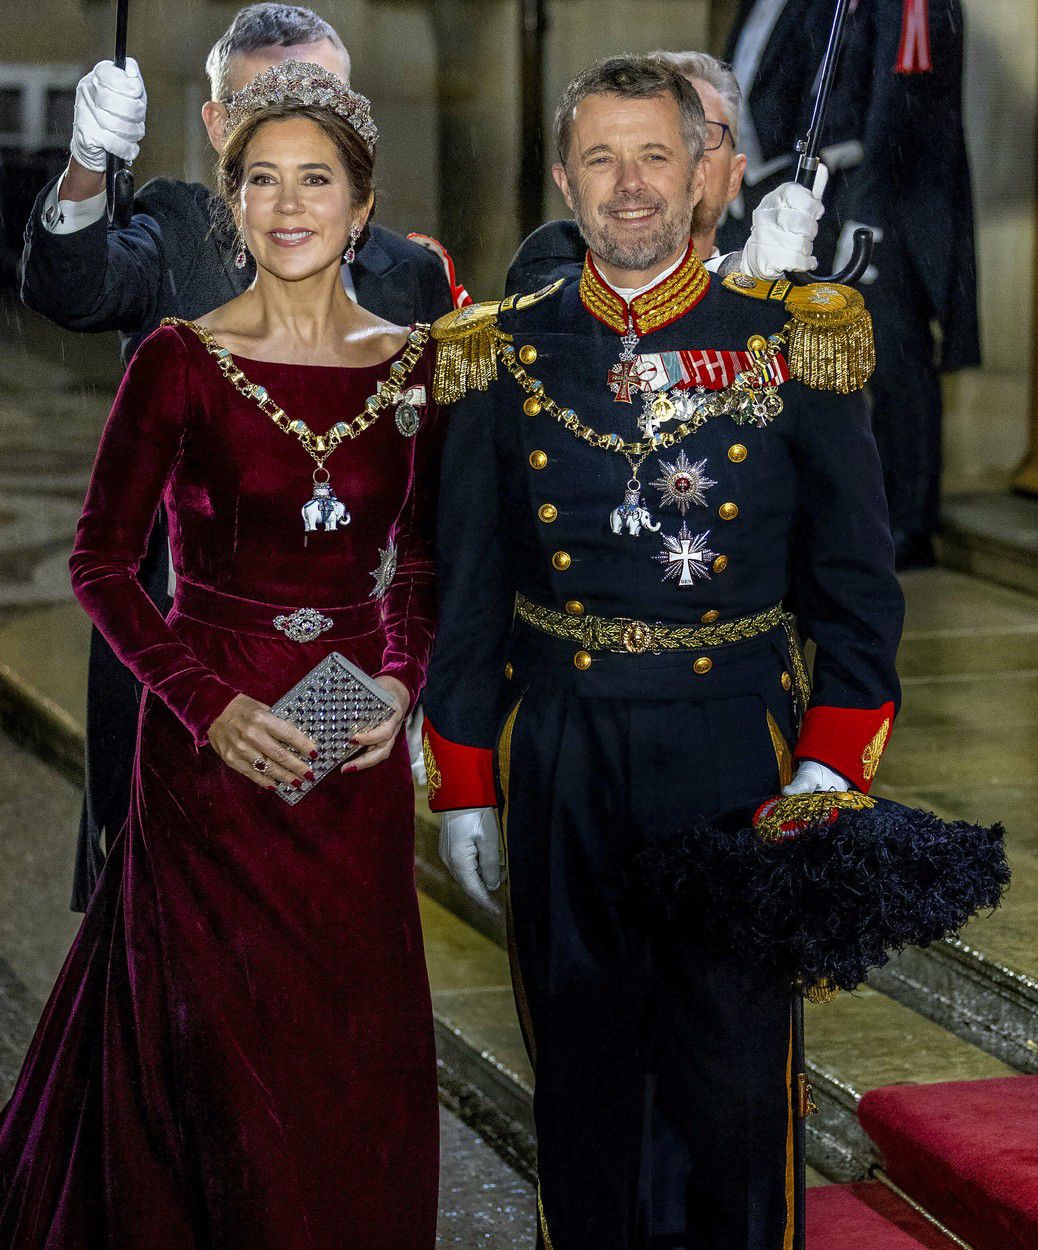 Korunný princ Frederik a korunná princezná Mary